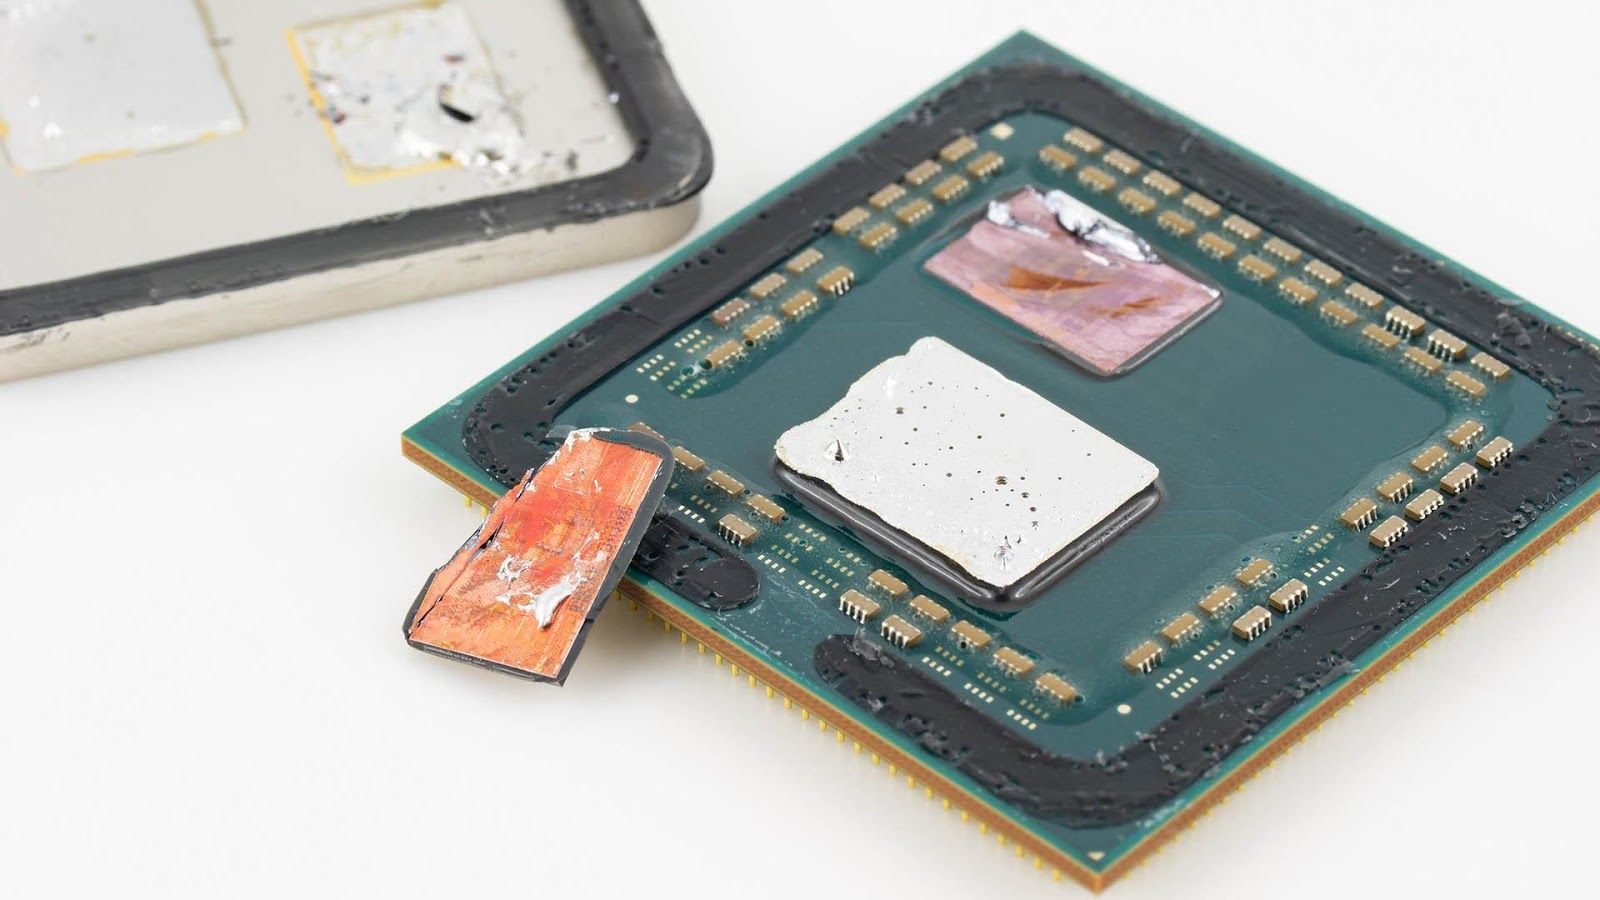 Mời anh em cùng chiêm ngưỡng bộ ảnh CPU AMD Ryzen 5 5600X phiên bản… bị mẻ